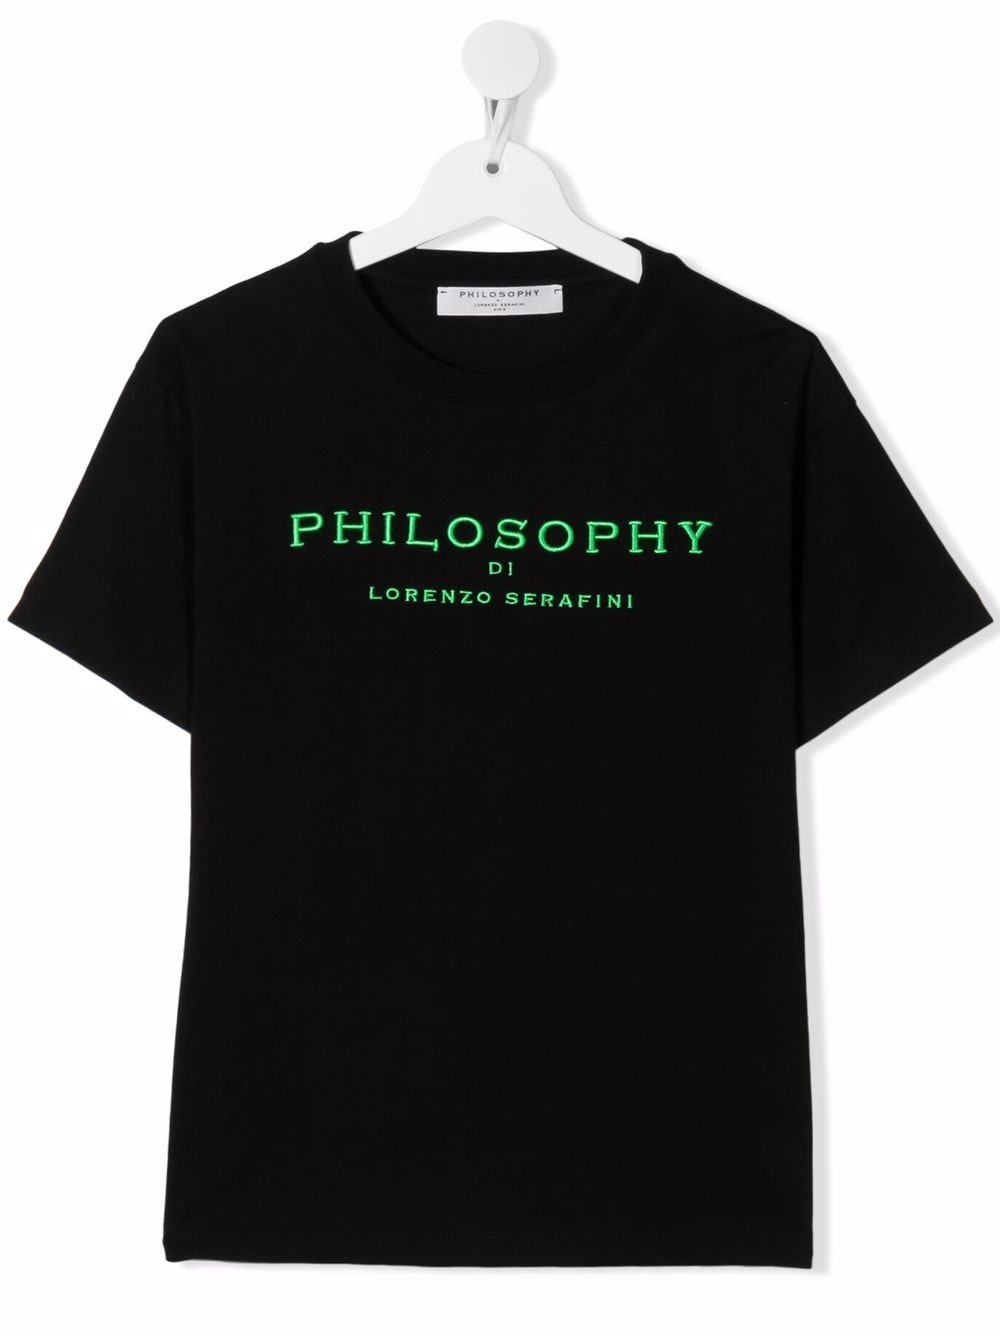 фото Philosophy di lorenzo serafini kids футболка с вышитым логотипом